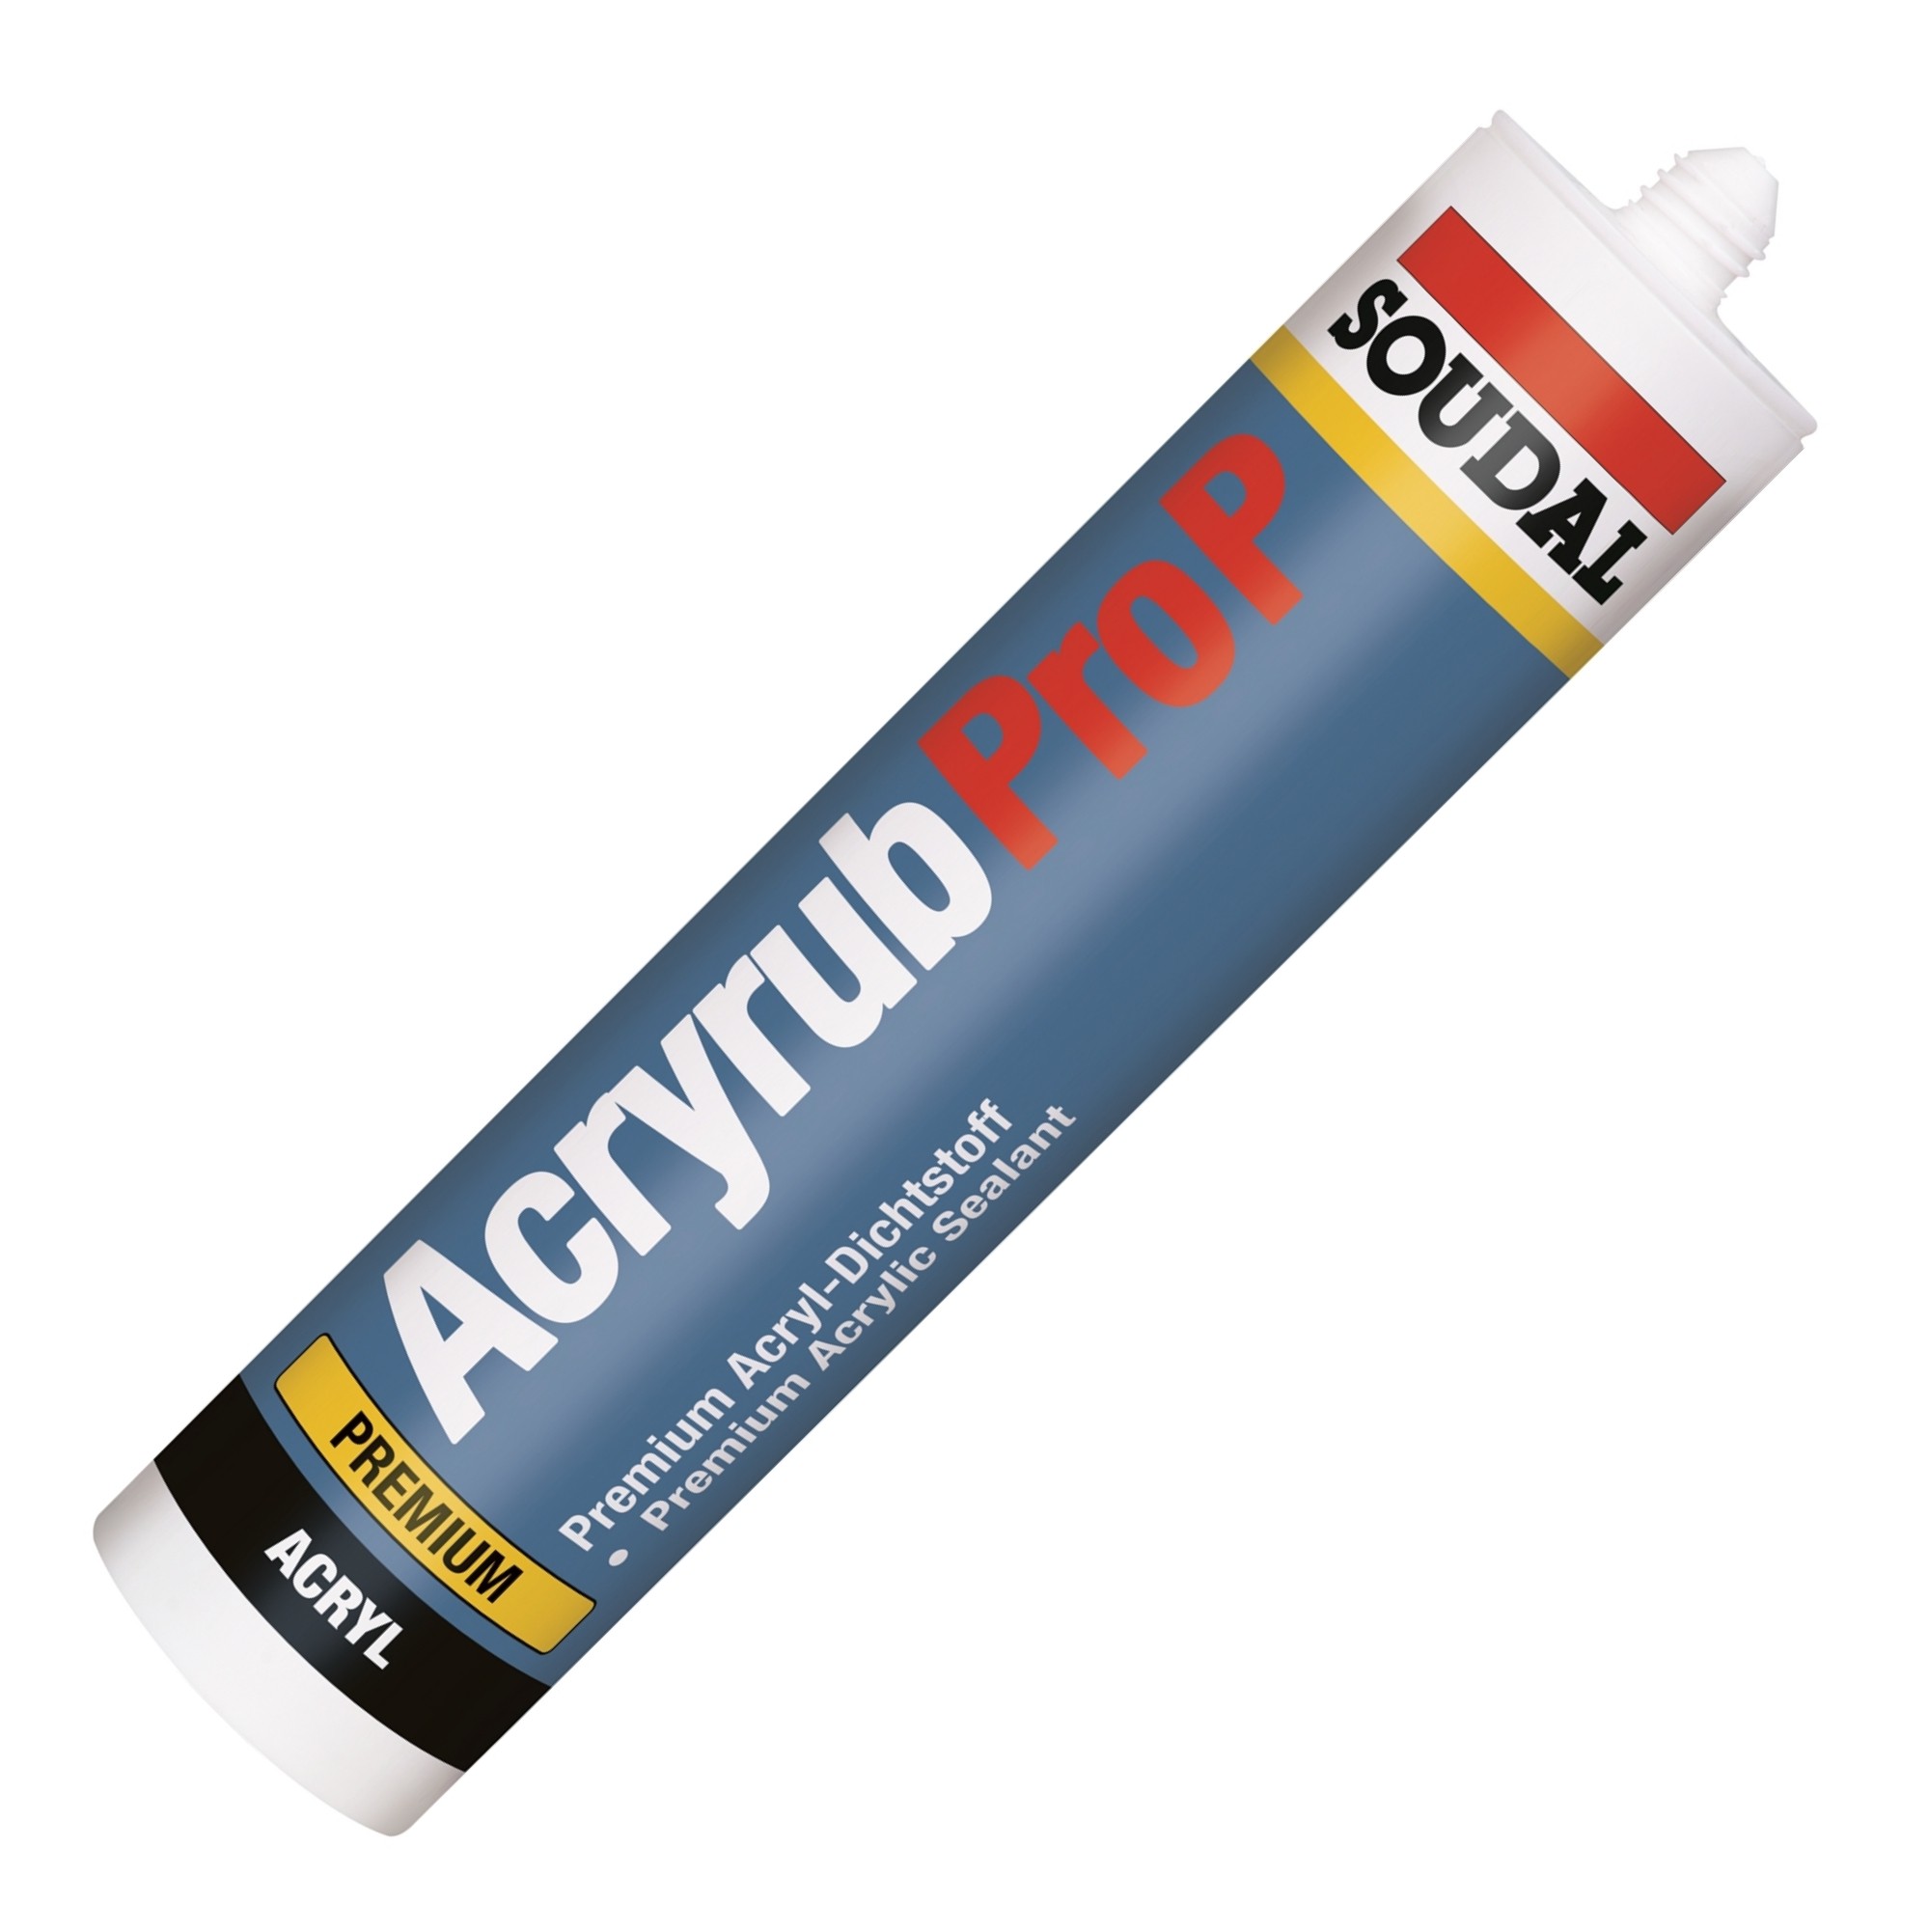 Soudal Acryl Acryrub pro P 310 ml weiss